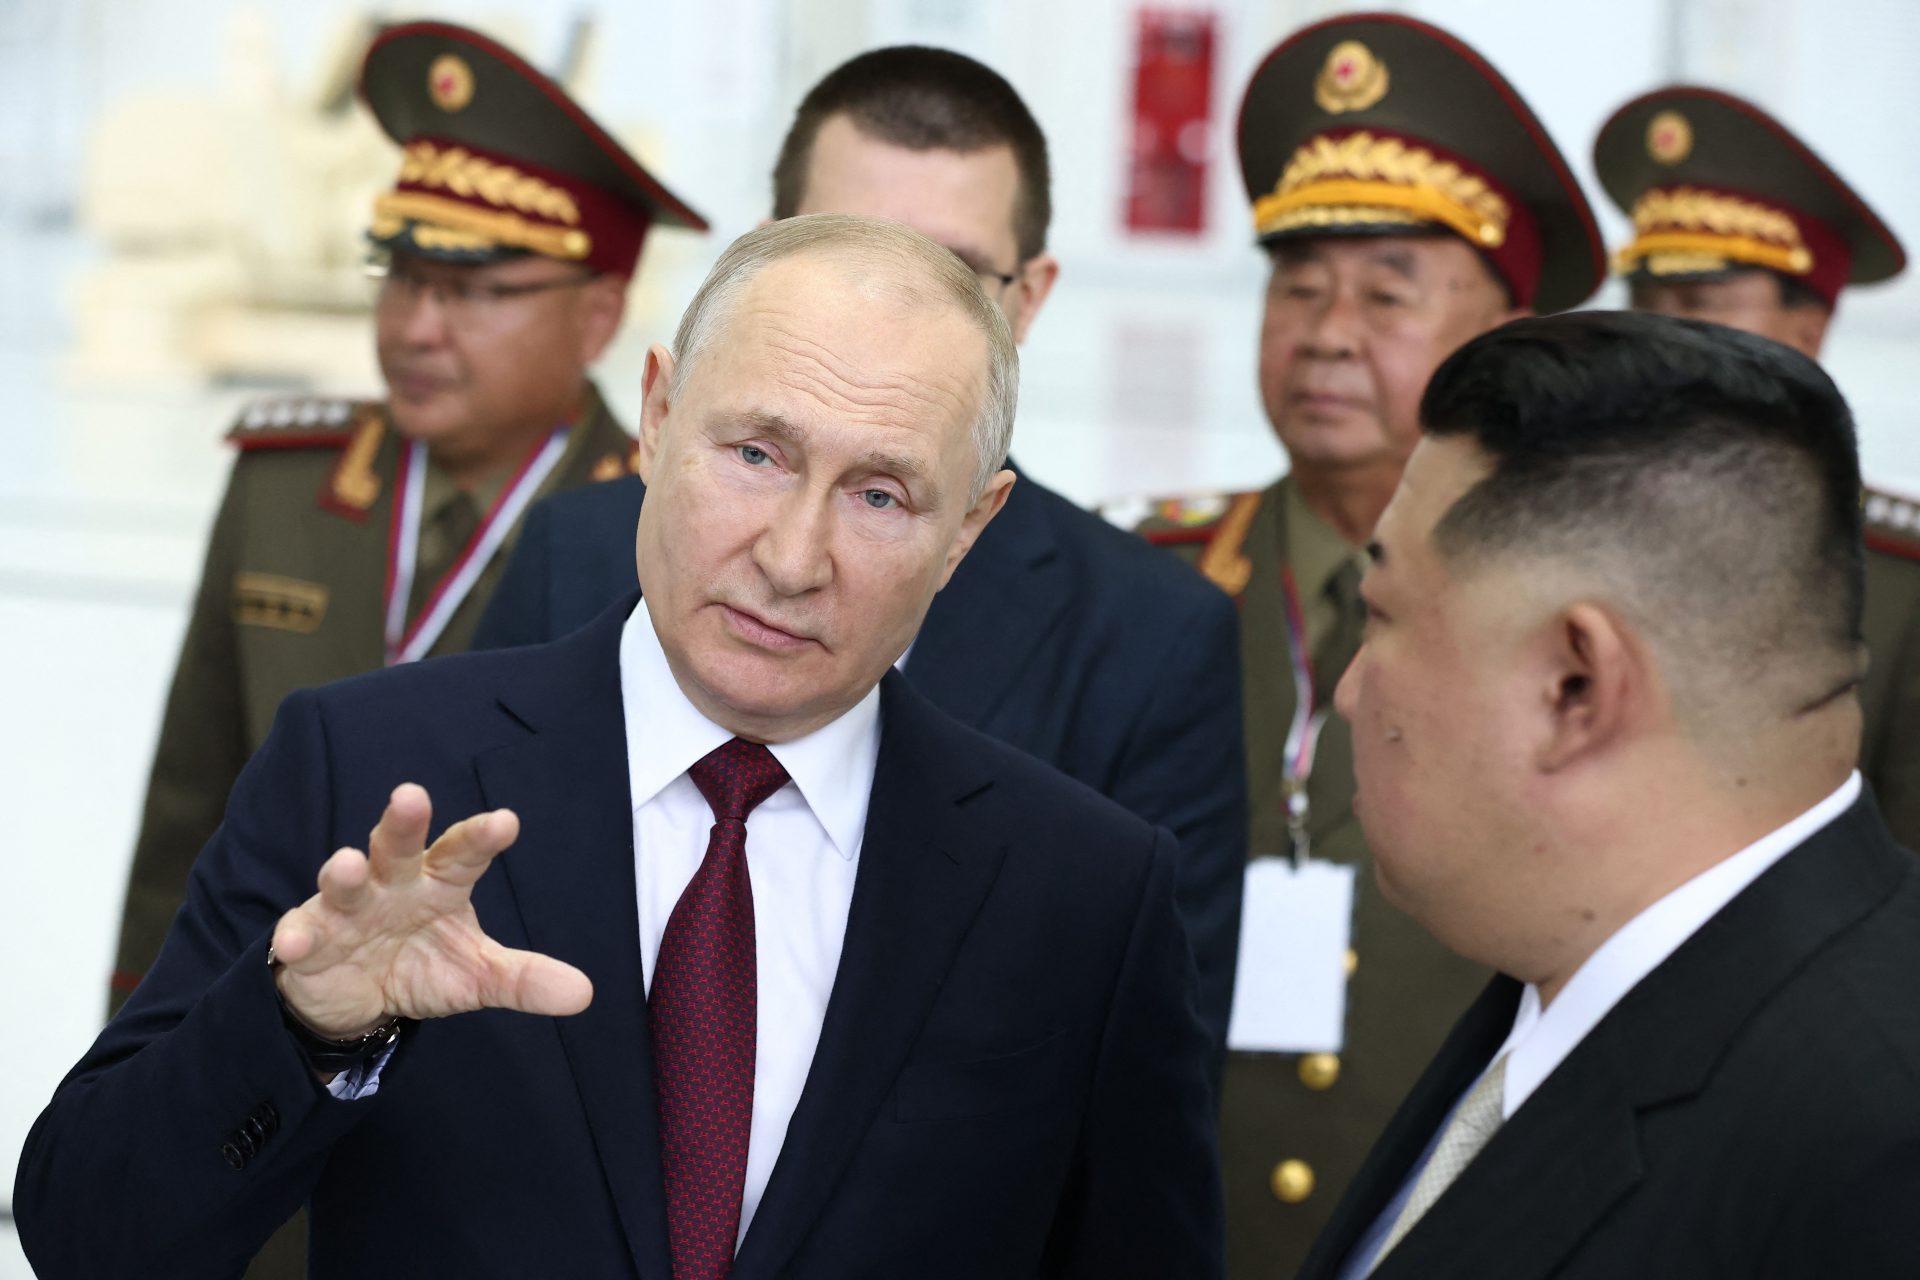 Russlands neue Beziehung zu Nordkorea verändert die Welt